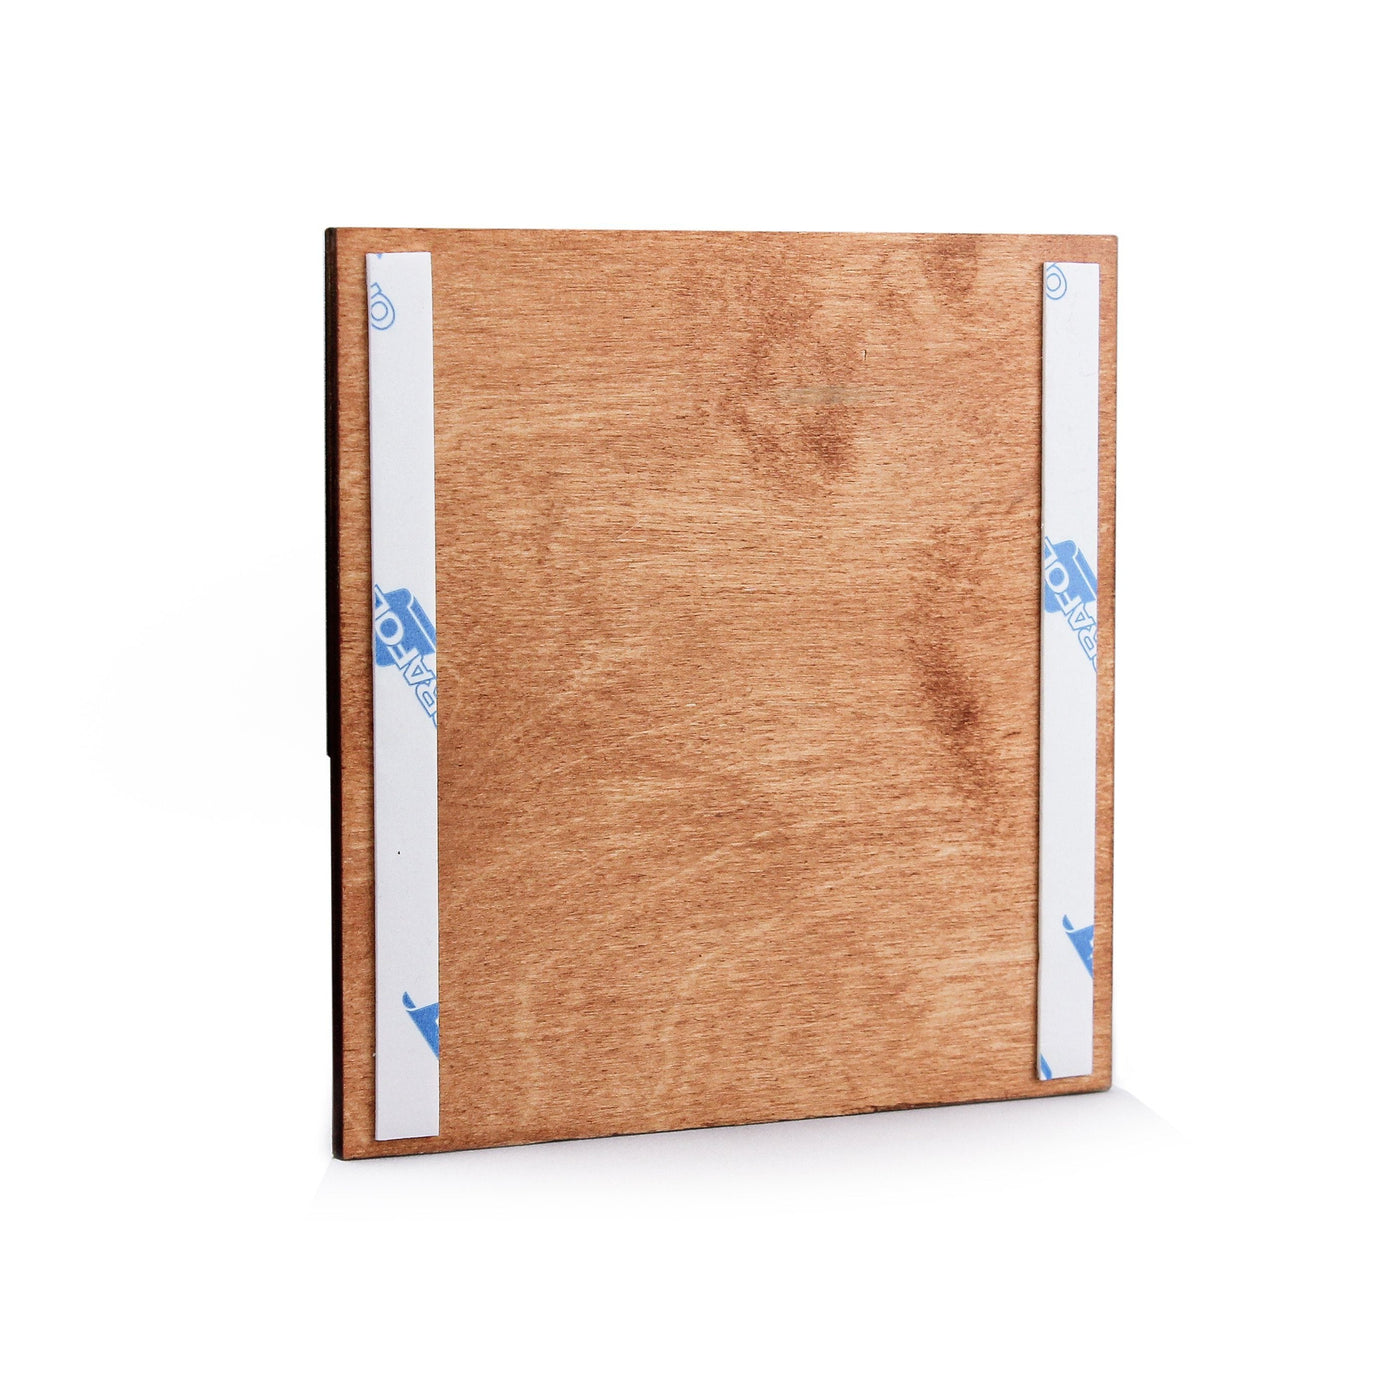 Utility Room Door Sign - Stainless Steel & Wood Door Plate "Jure" Design